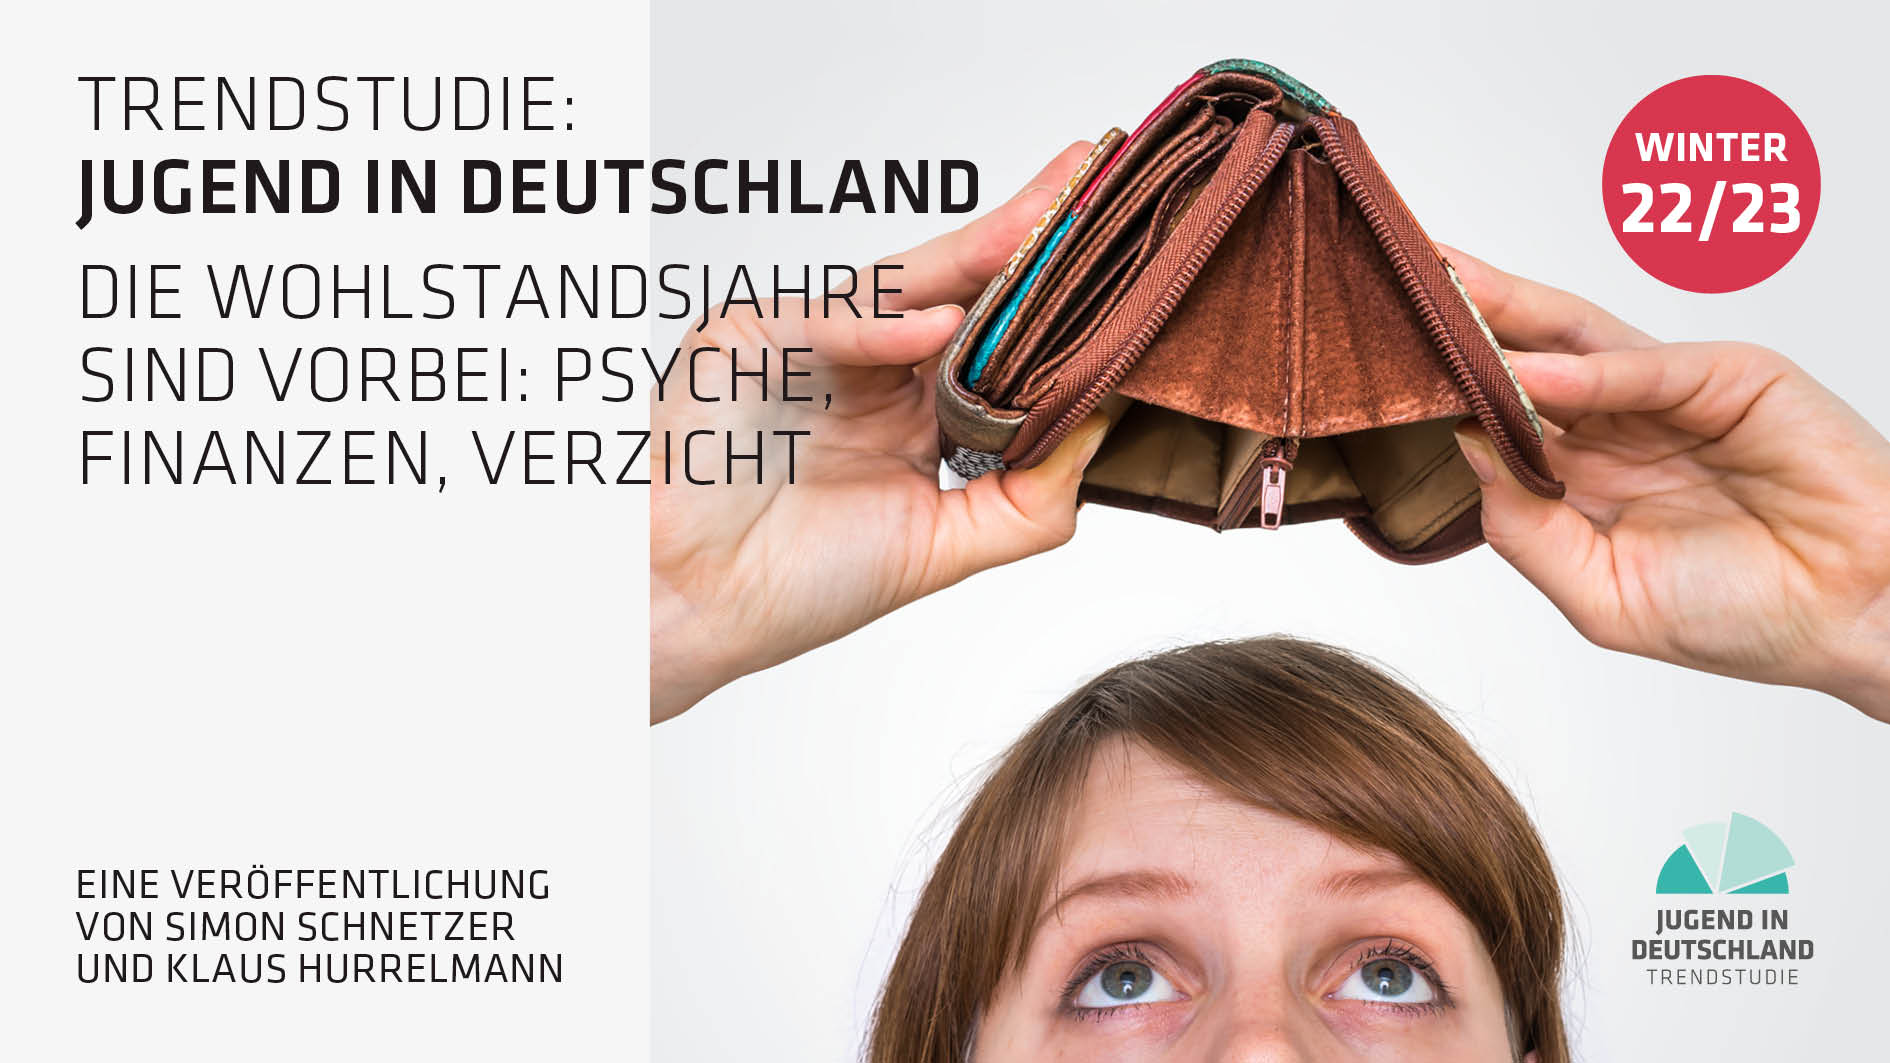 Cover: Jugend in Deutschland Trendstudie Winter 2022-23